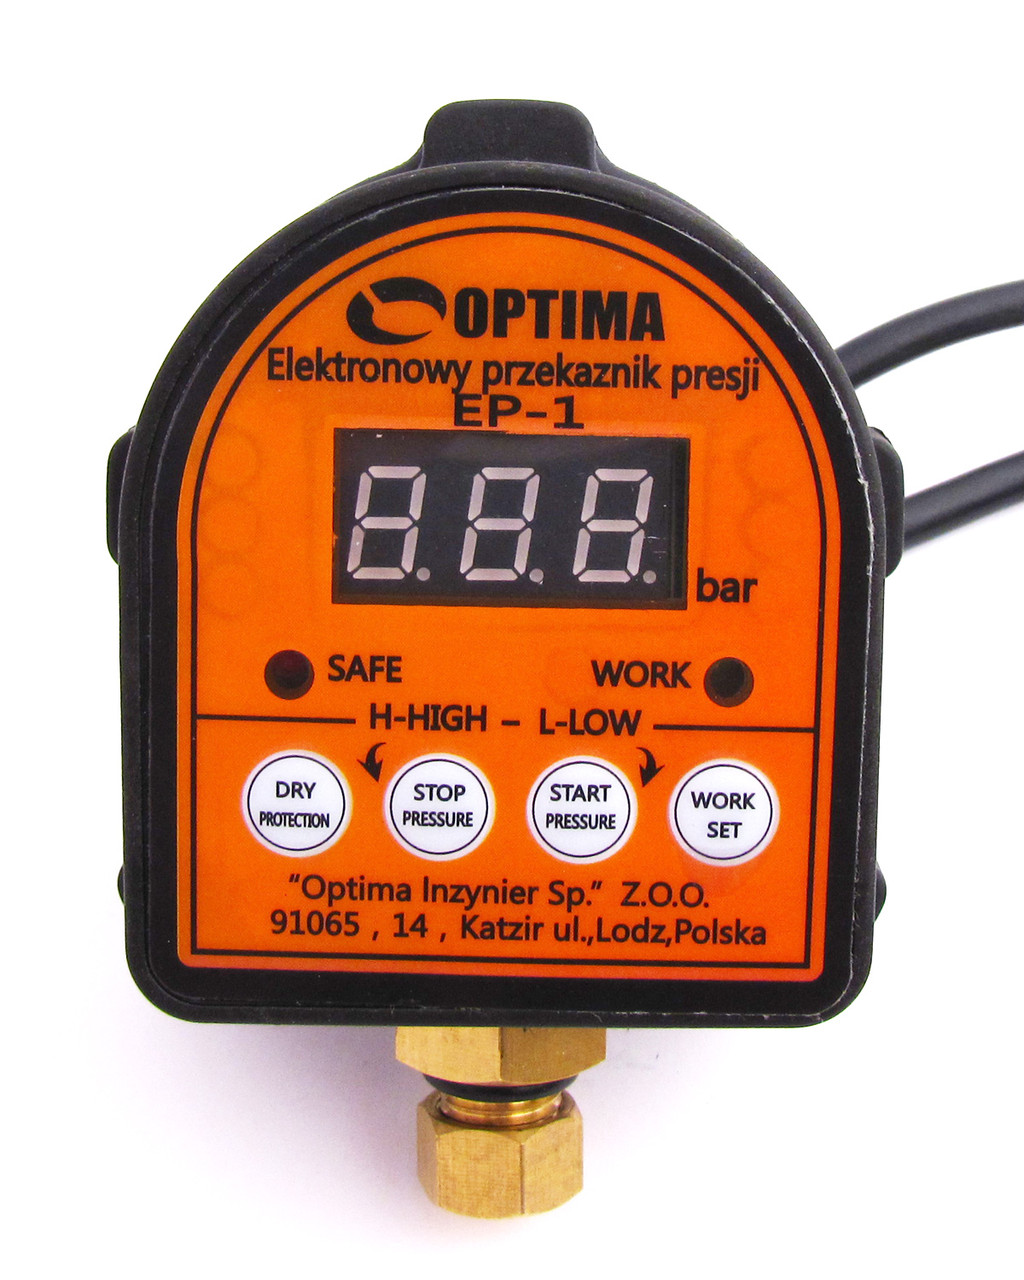 Реле давления с защитой сухого хода Optima EP-1 (Польша) автоматика для .